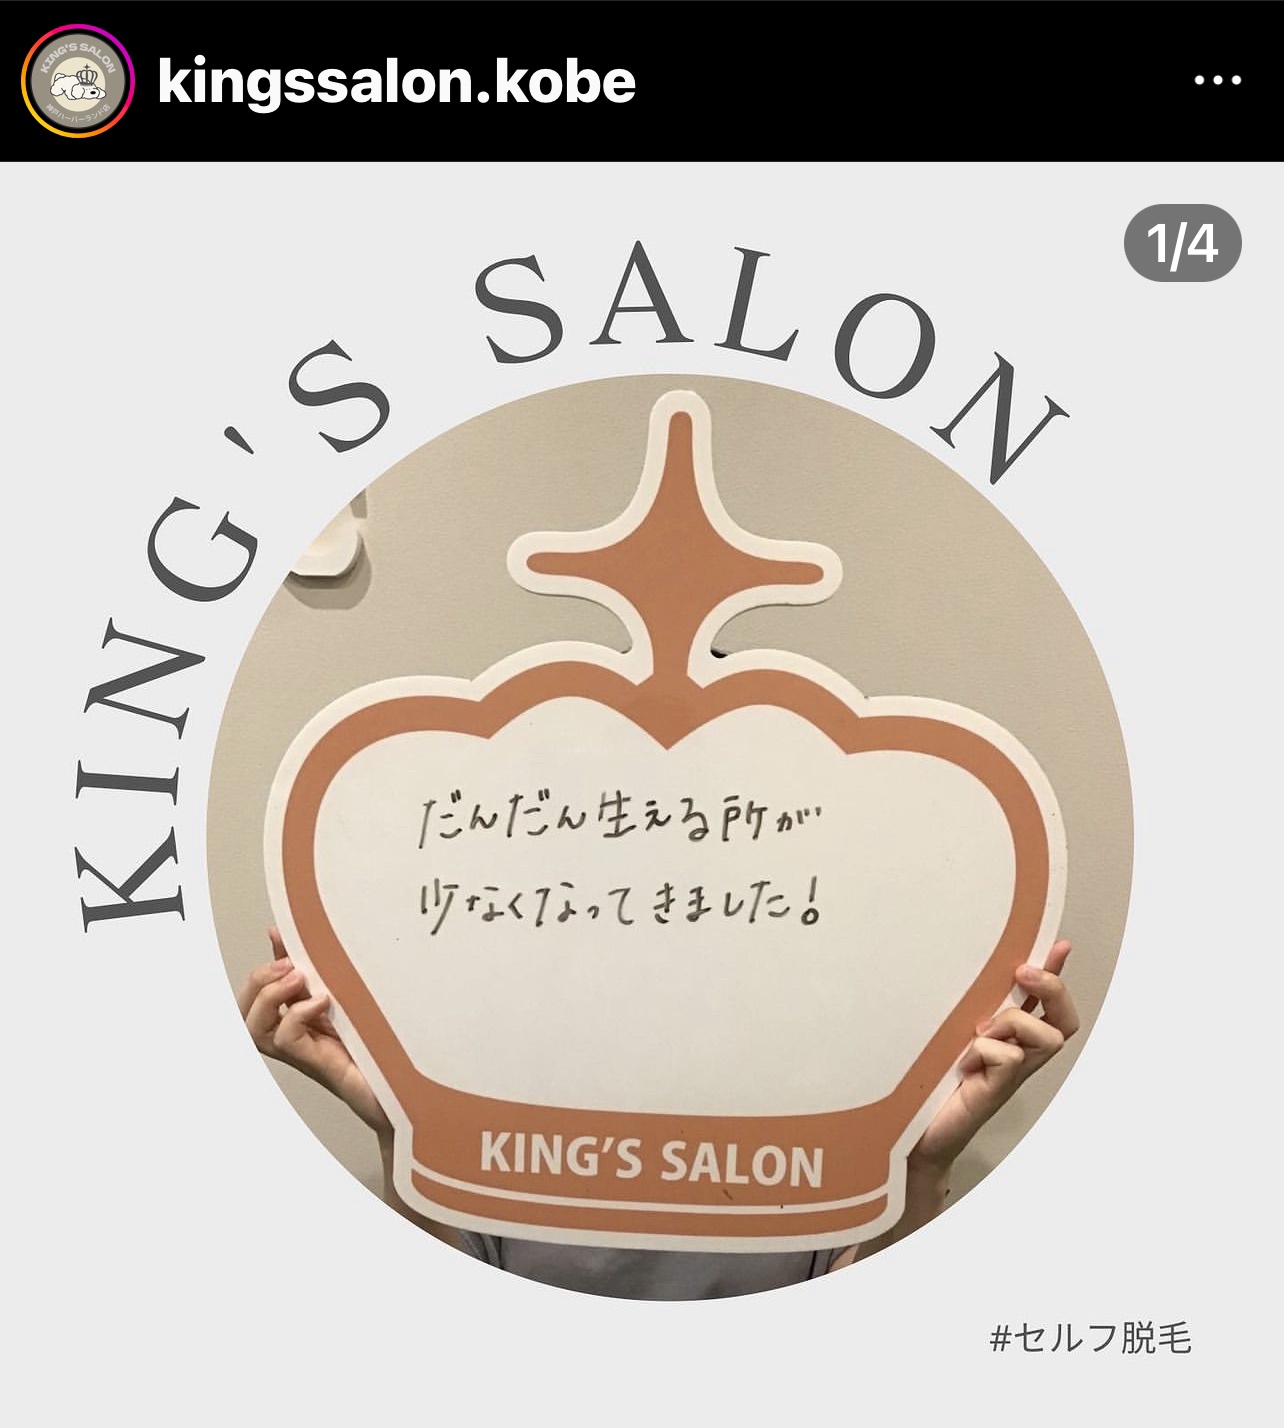 キングスサロン神戸ハーバーランド店 お客様の声 サムネイル画像